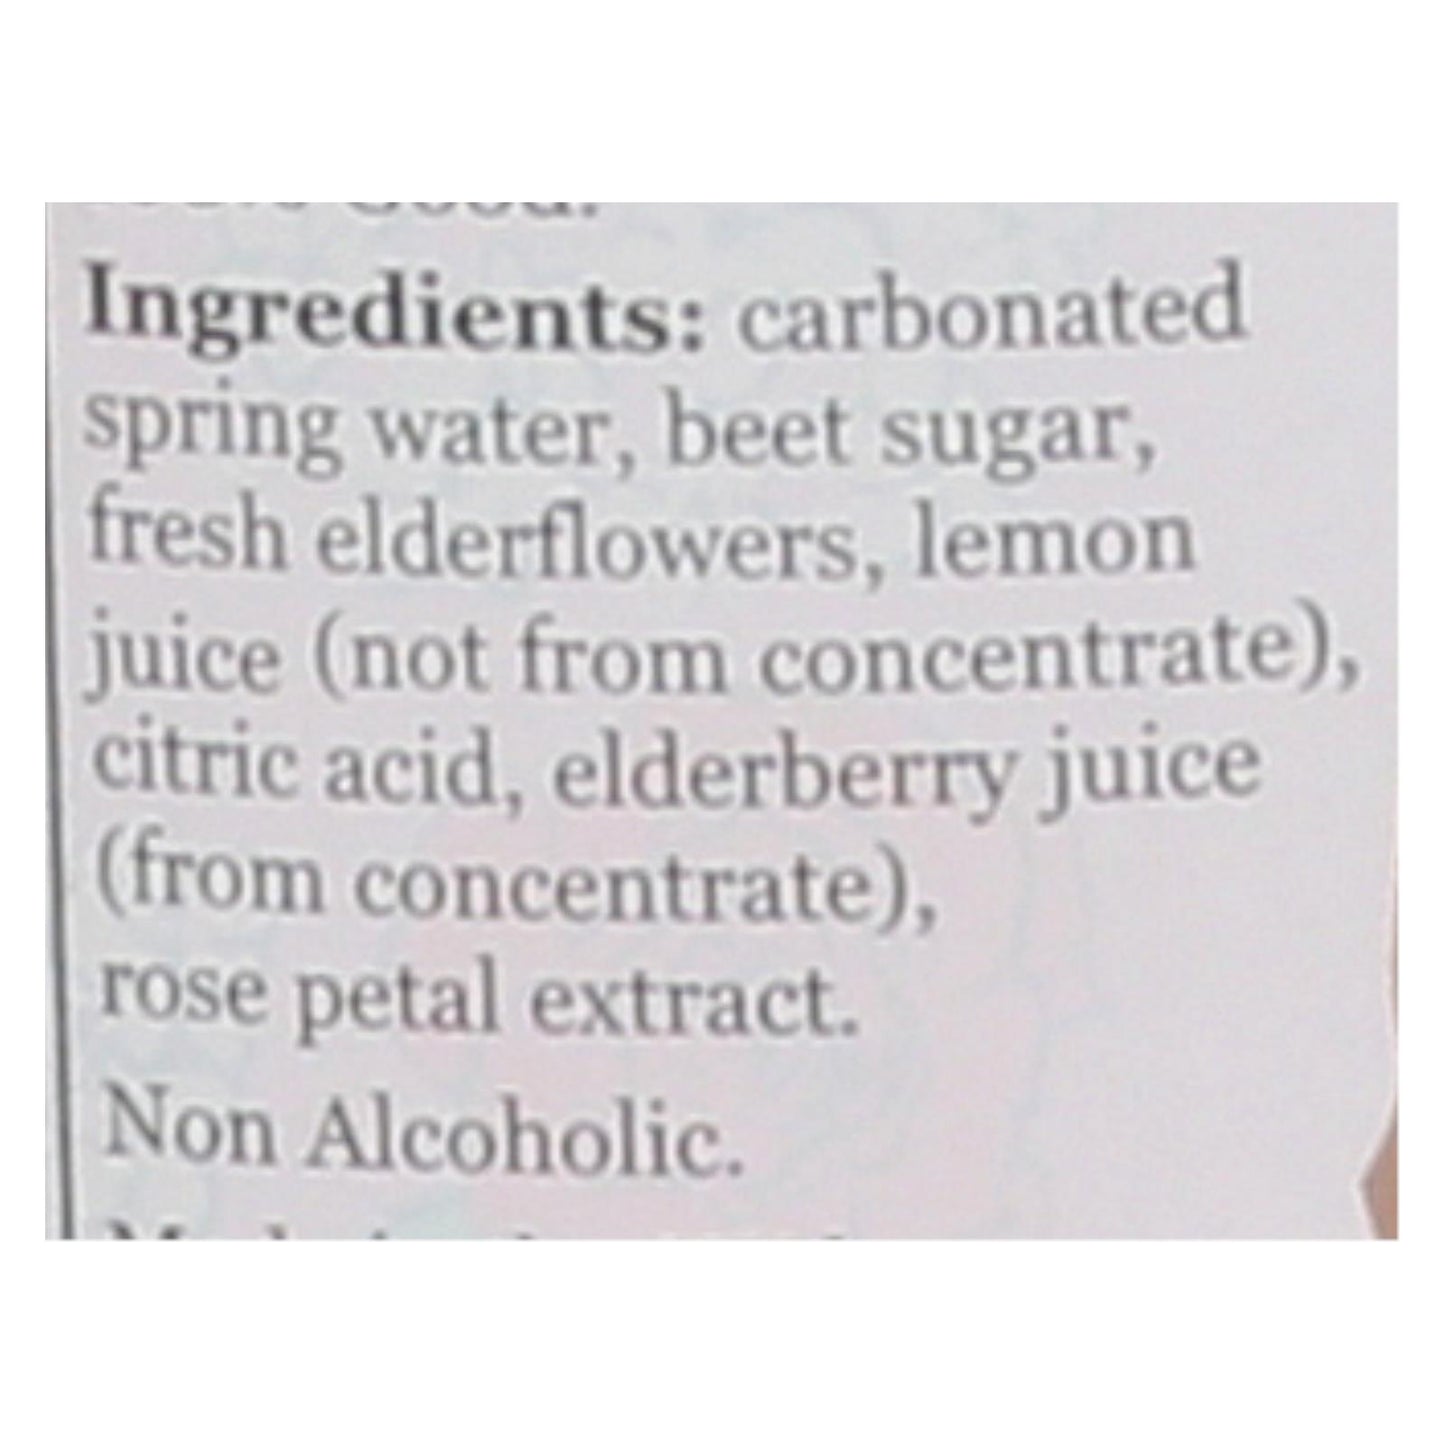 Belvoir - Organic Lemonade - Elderflower And Rose - Case Of 12 - 8.4 Fl Oz.